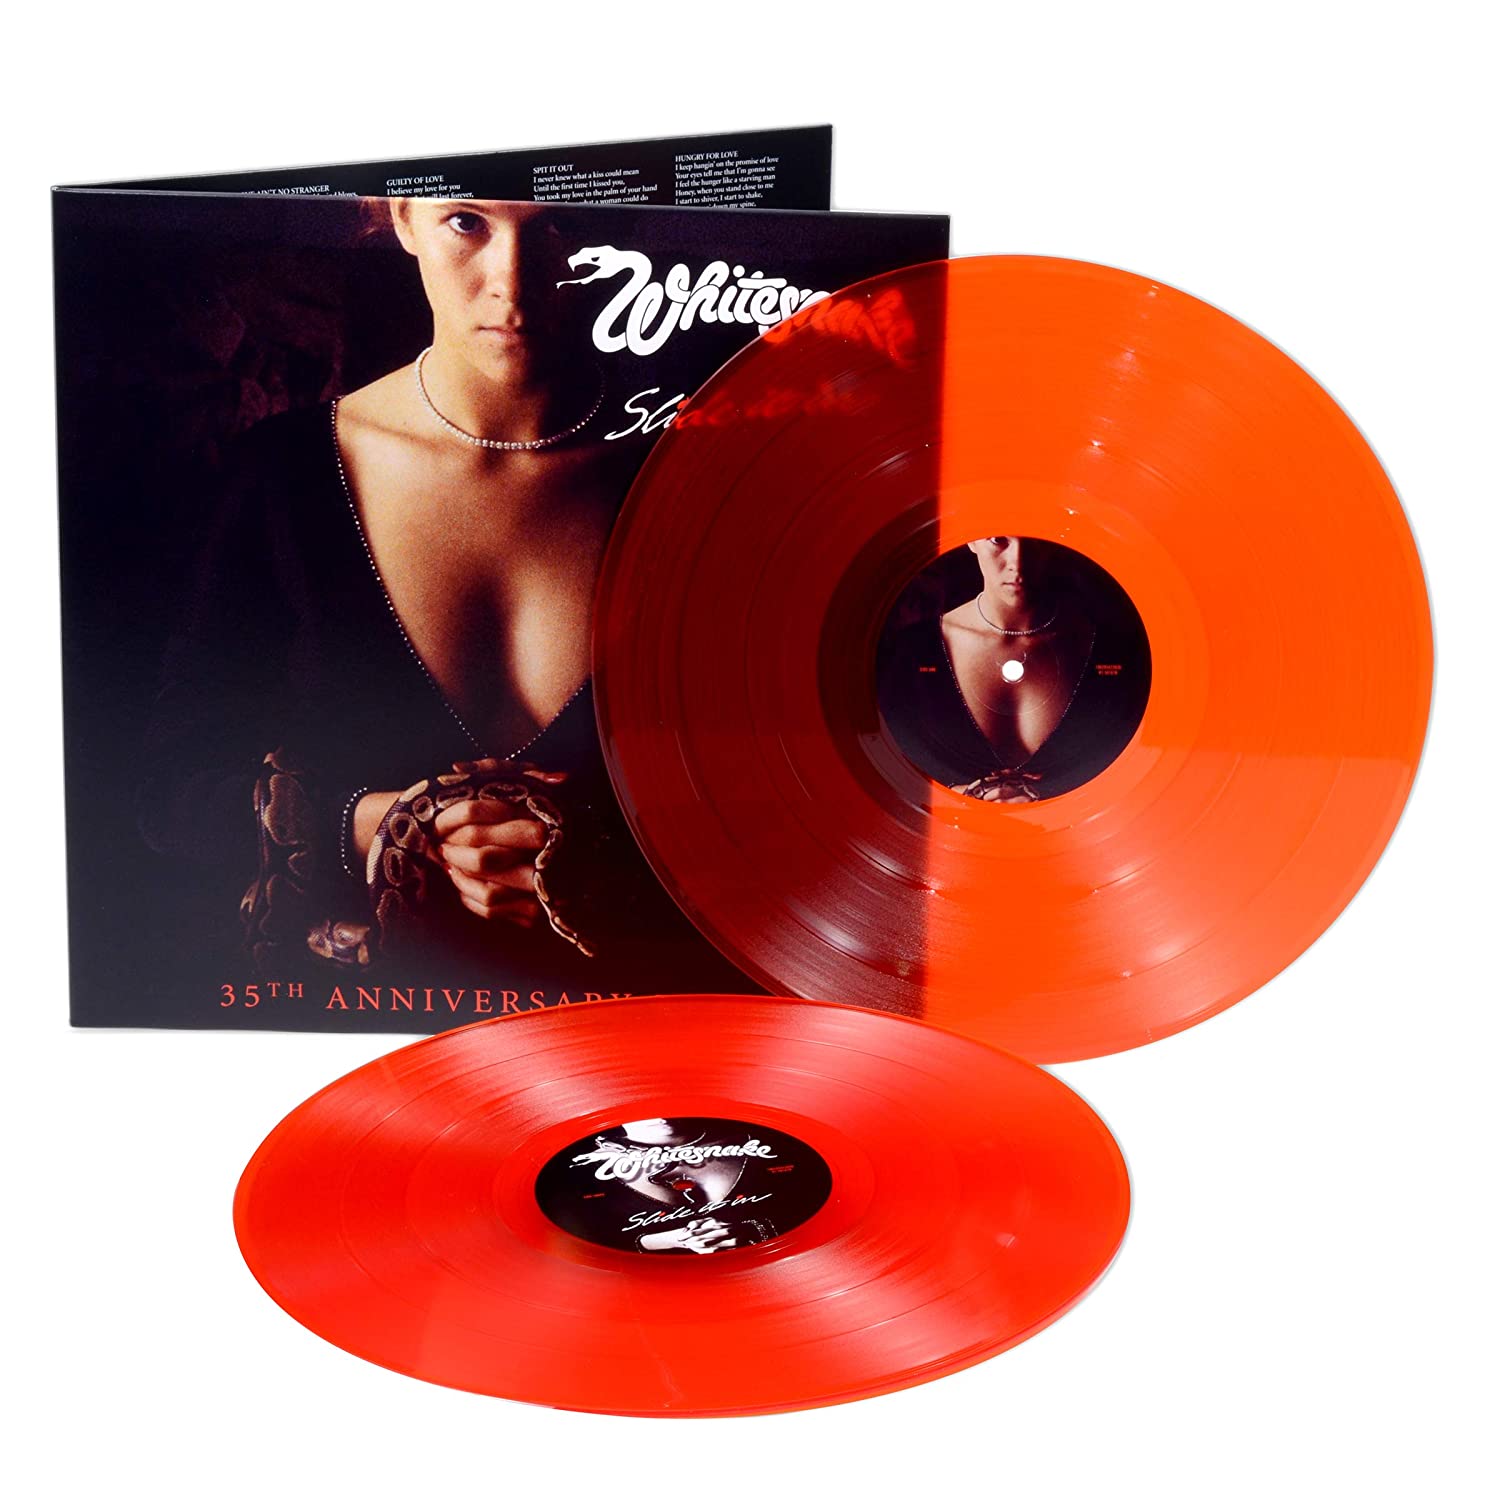 Whitesnake - Slide it In Ltd Ed Red 2LP vinyl (cut at 45 RPM!)